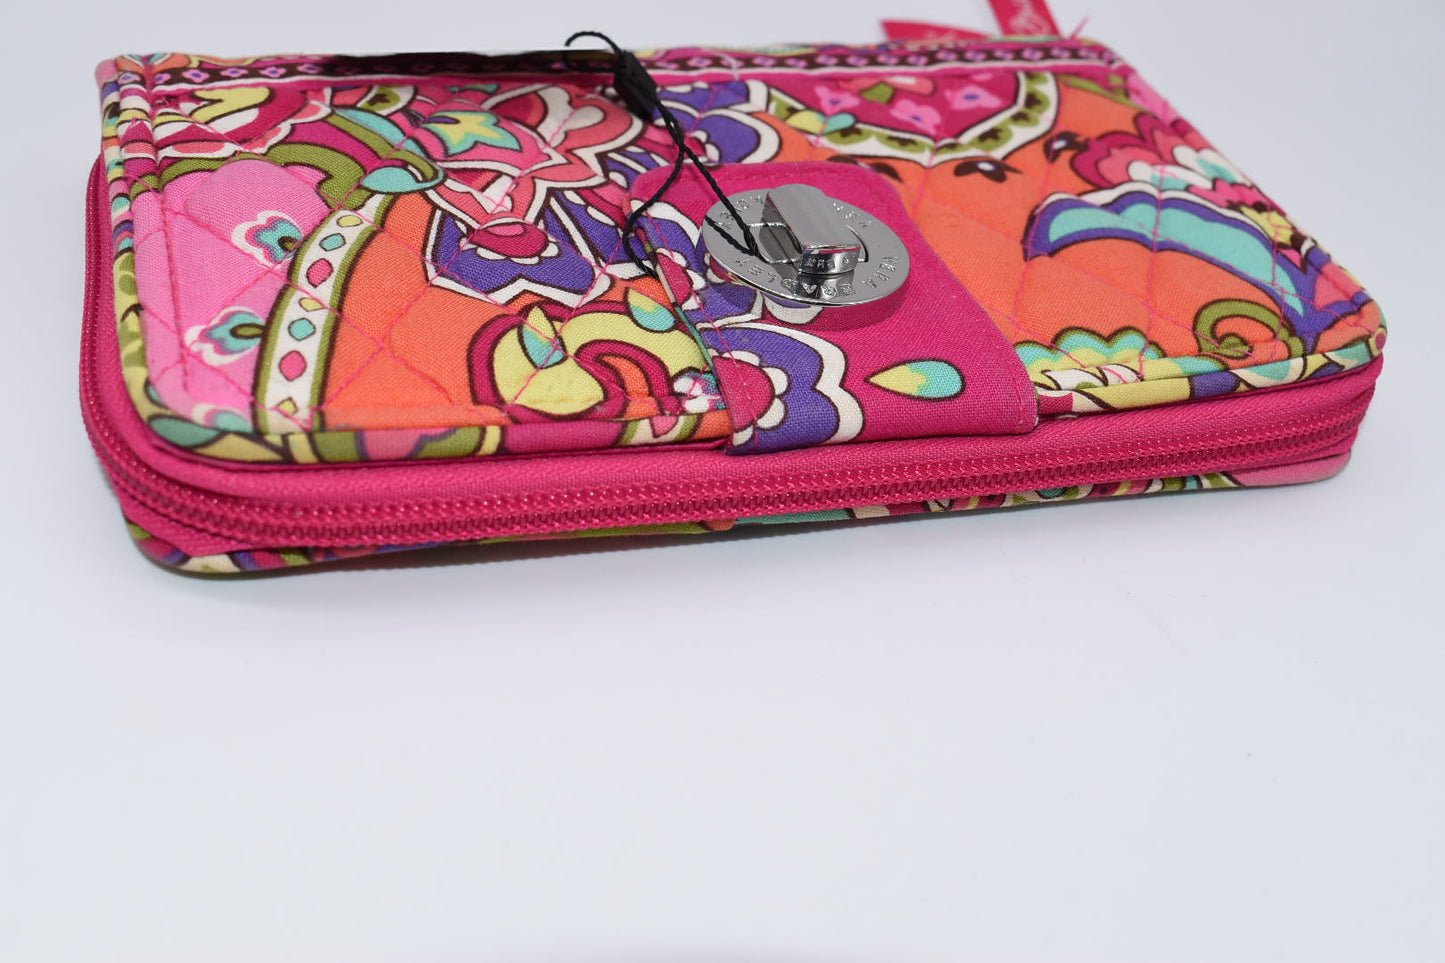 Vera Bradley Turnlock Wallet in "Pink Swirls" Pattern